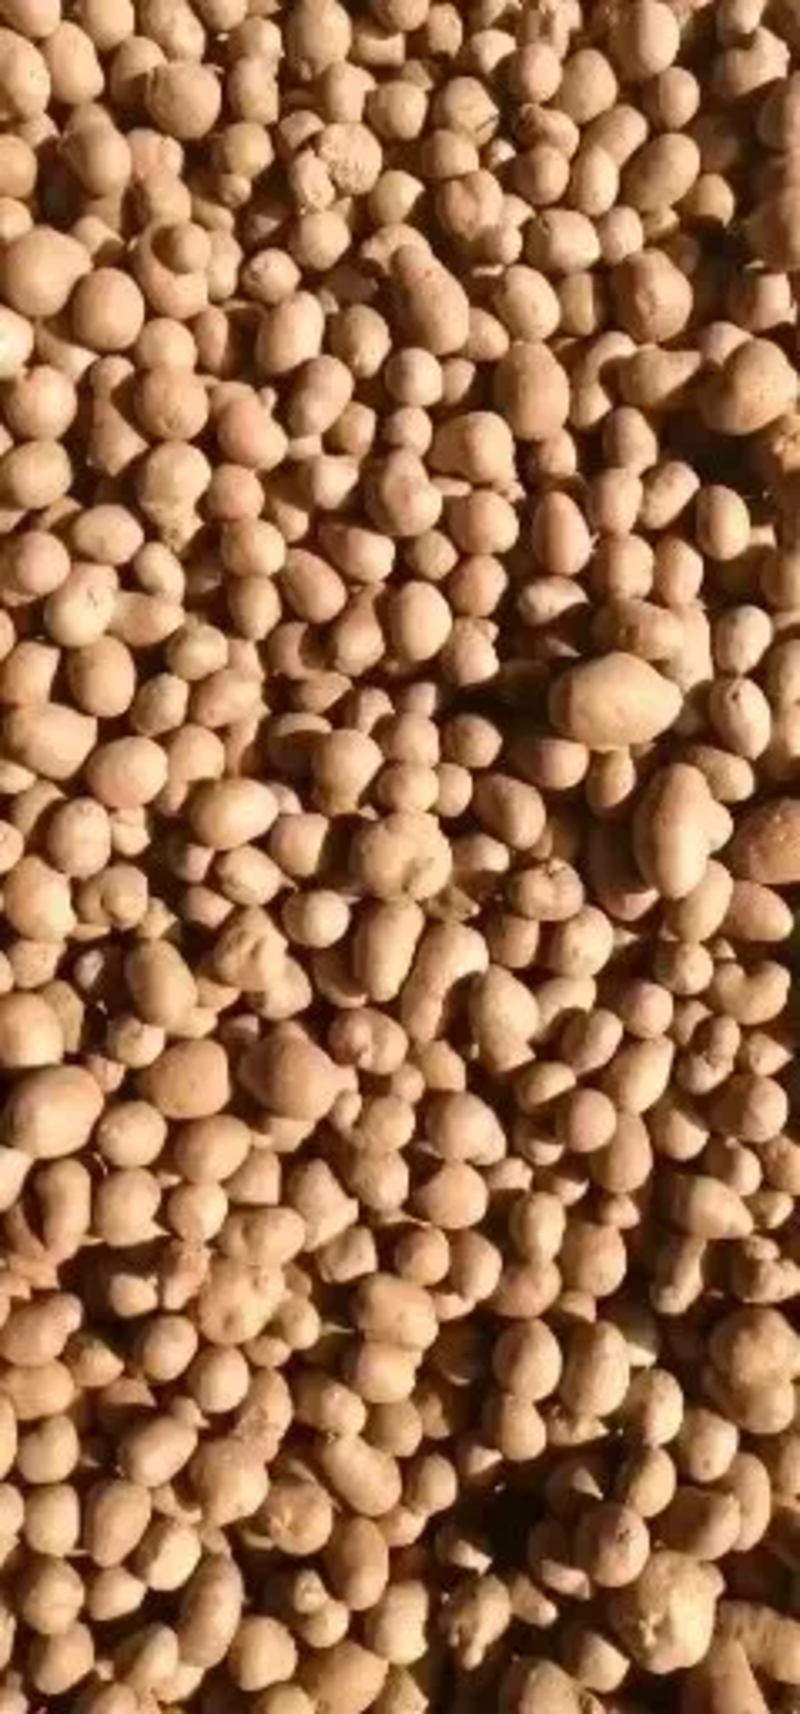 【精选】精品白玉山药豆批发产地直供质量保证量大优惠